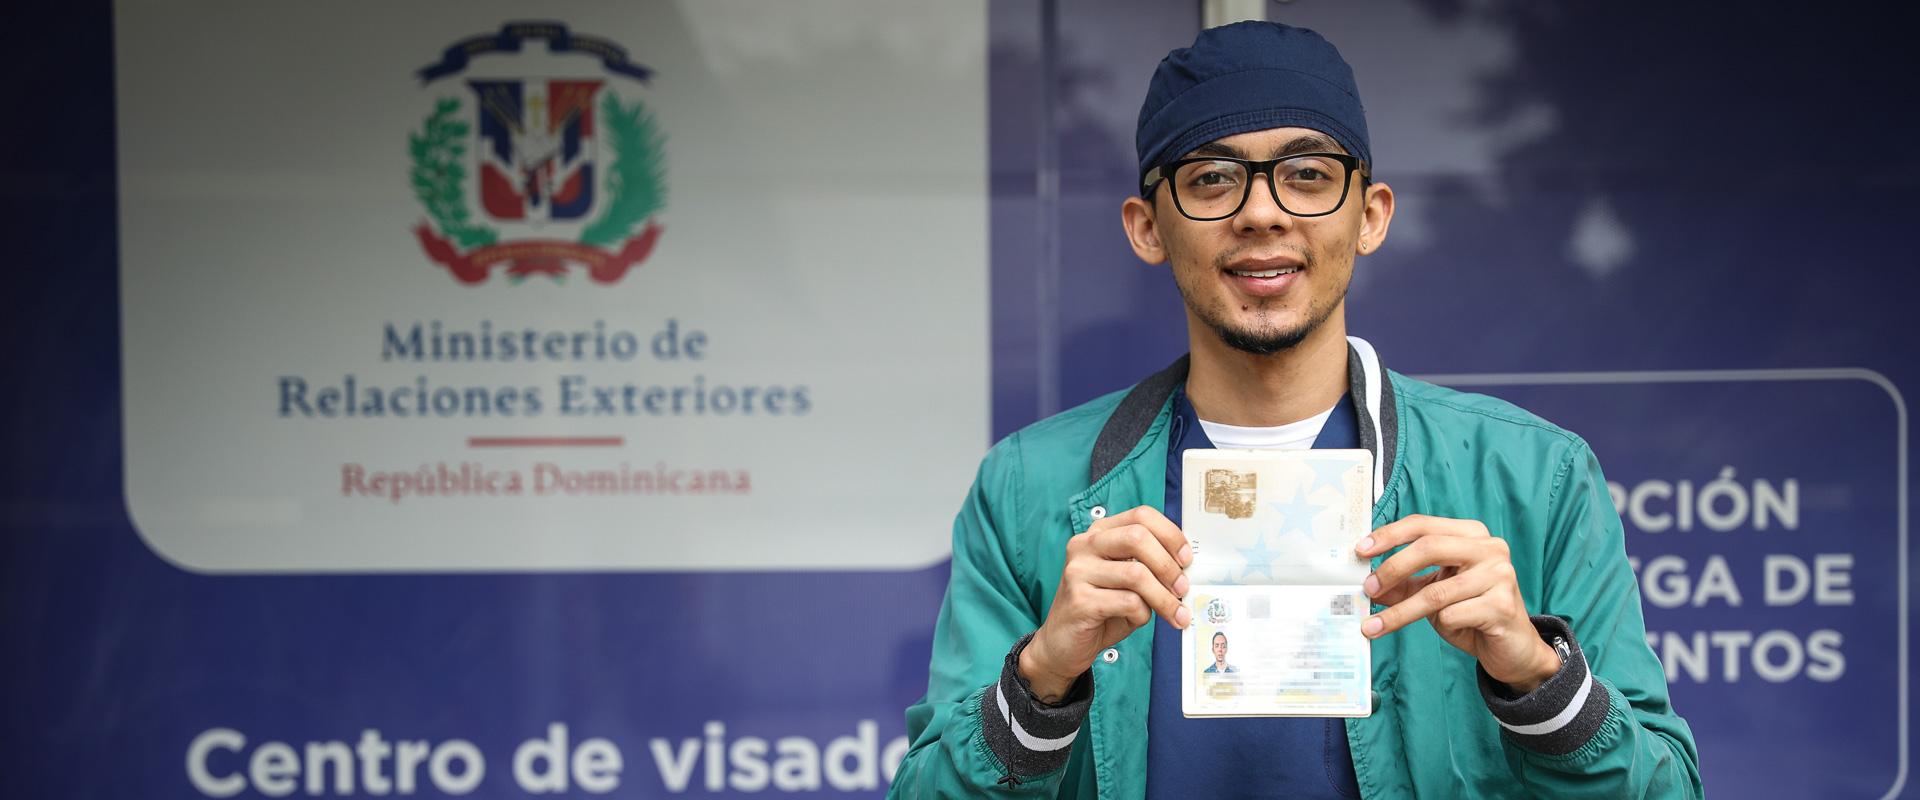 Estatus regular: licencia para soñar para migrantes venezolanos en la República Dominicana